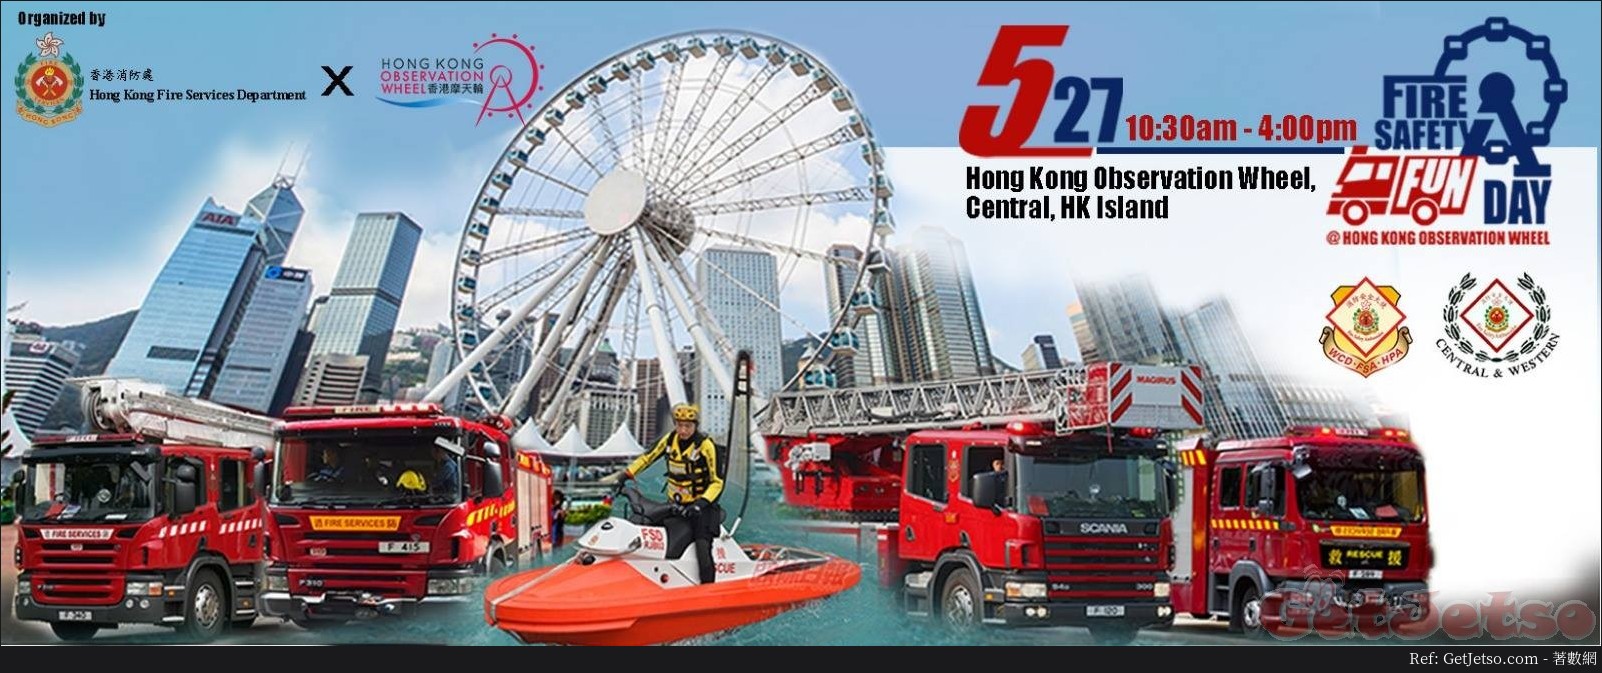 消防安全繽「Fun」日@中環香港摩天輪(18年5月27日)圖片1